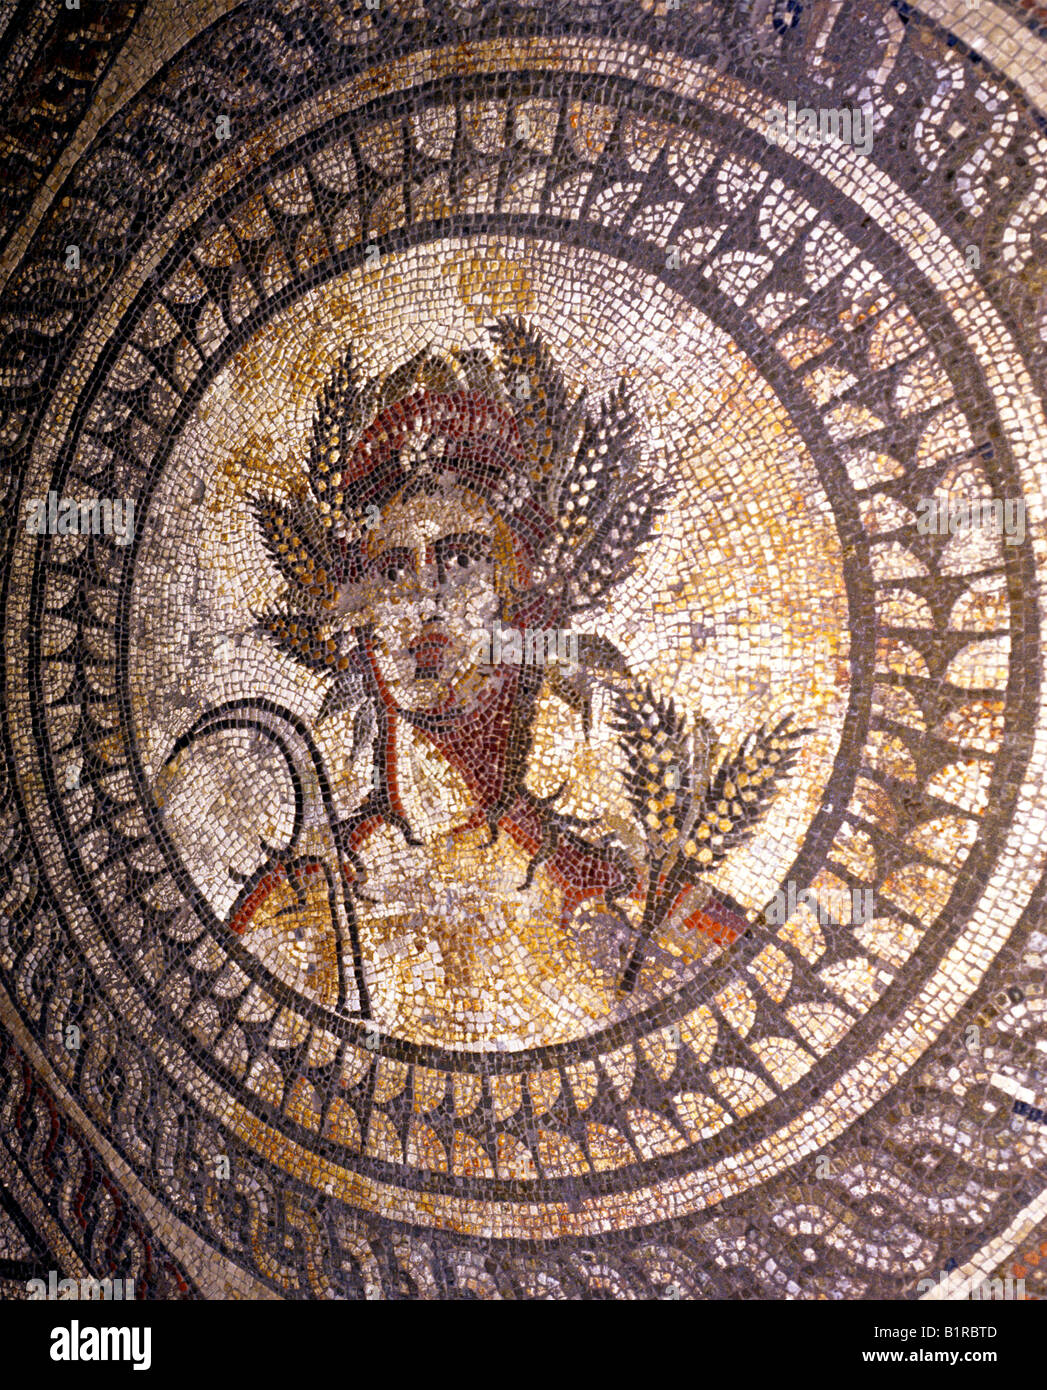 Römisches Mosaik Britanniens Museum Cirencester Mosaiksteine England Gloucestershire UK Estrich Großbritannien Mosaiken Fußböden Stockfoto